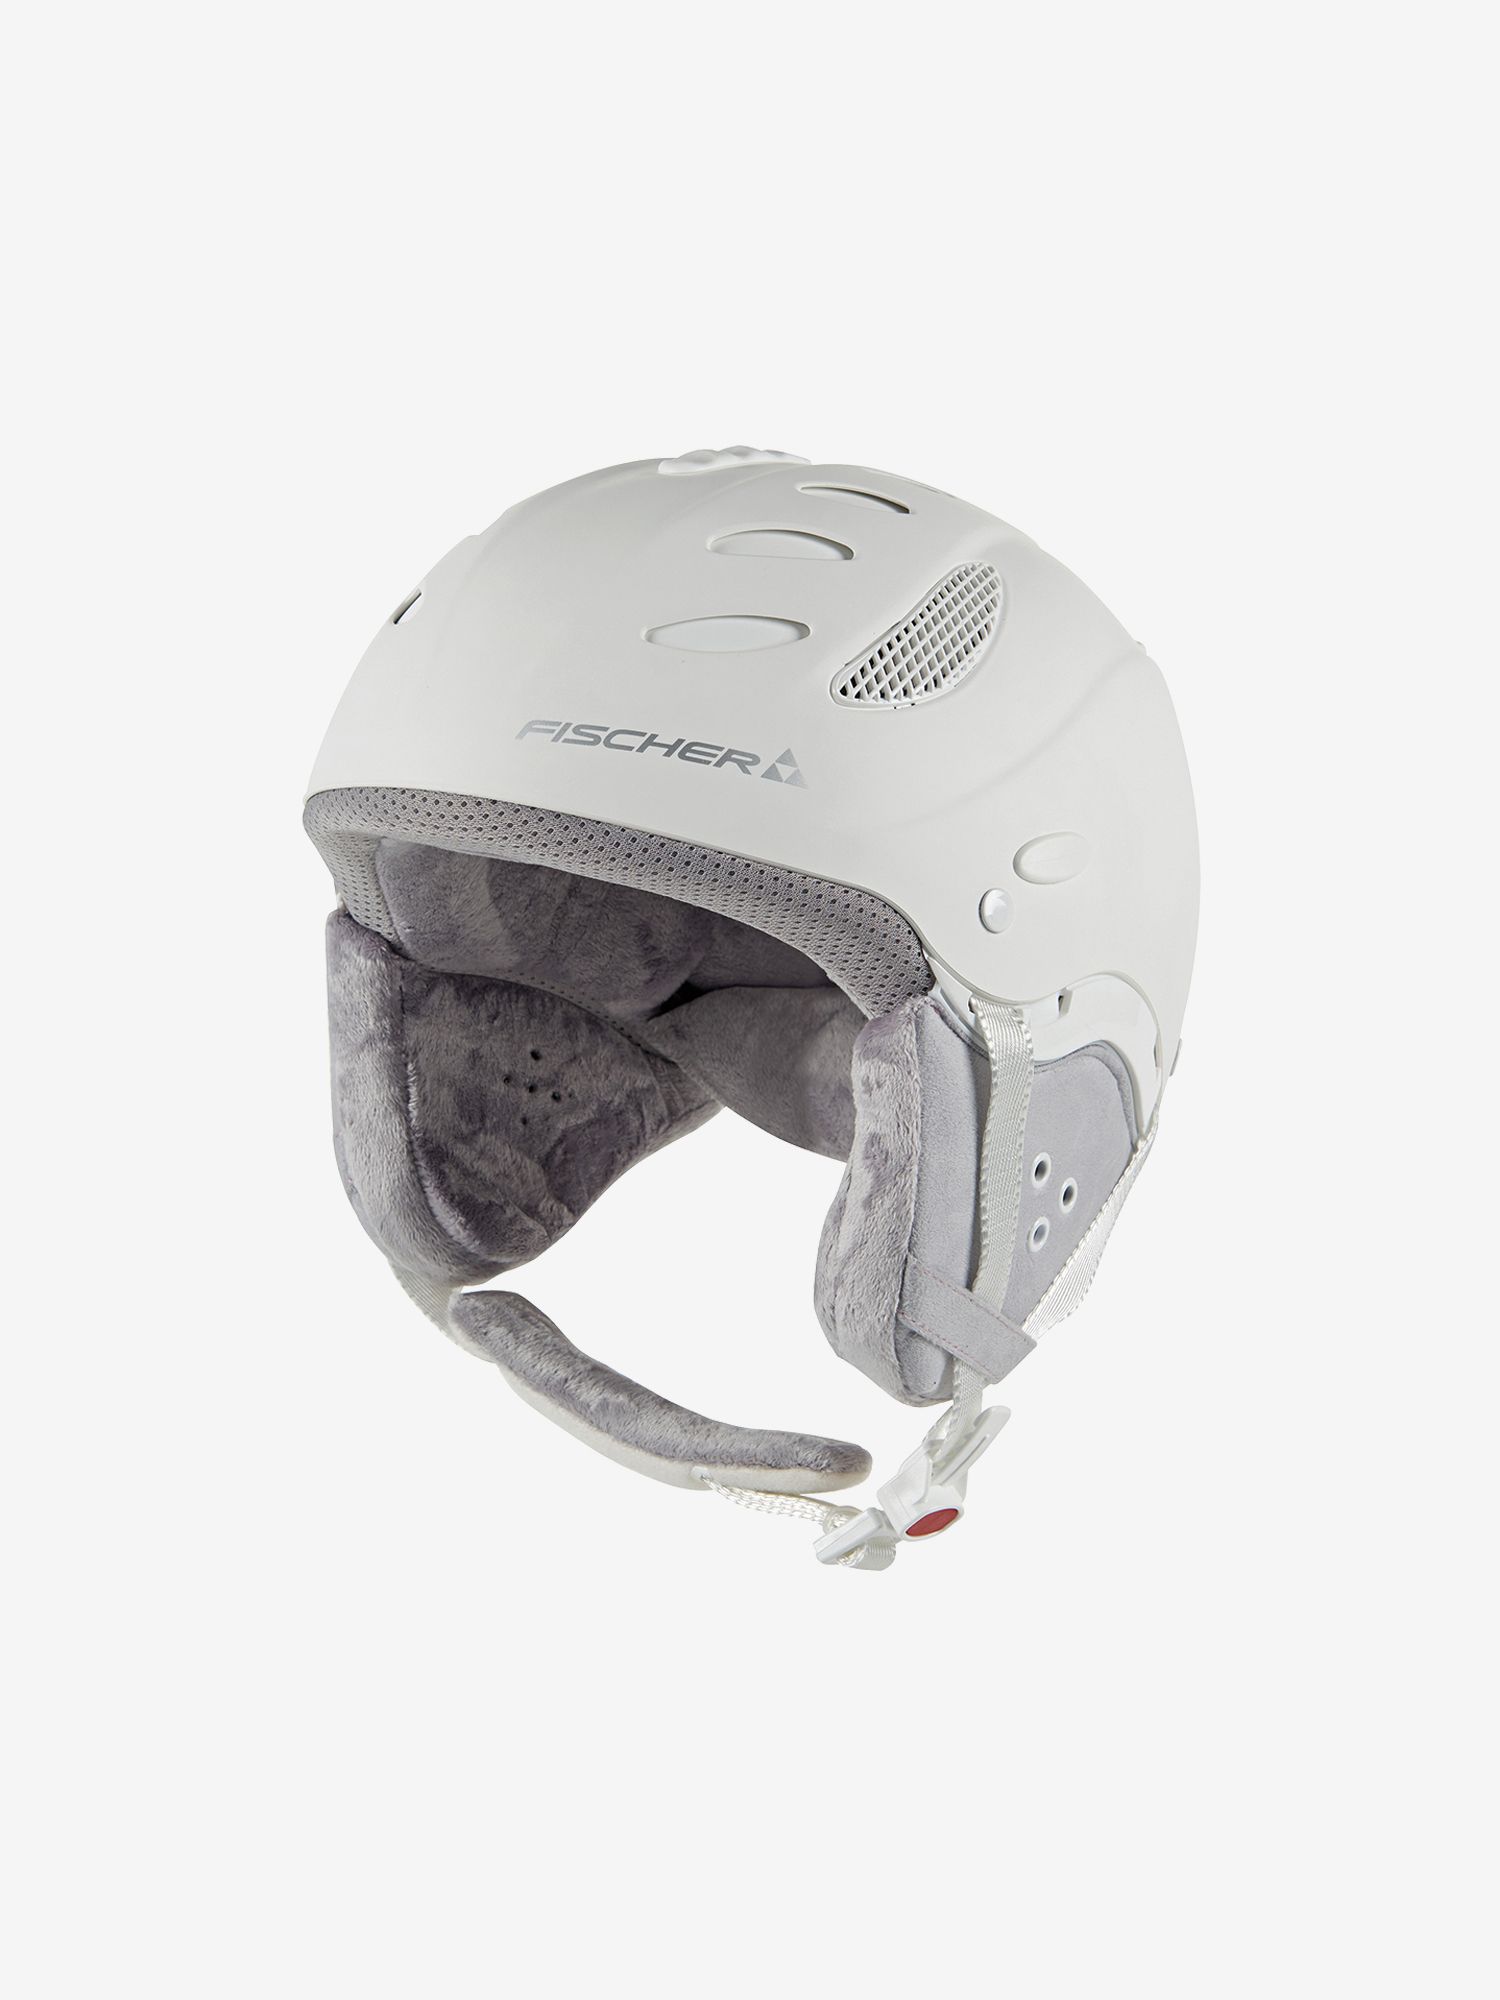 オンライン販促品 FISCHER スキーヘルメット | artfive.co.jp